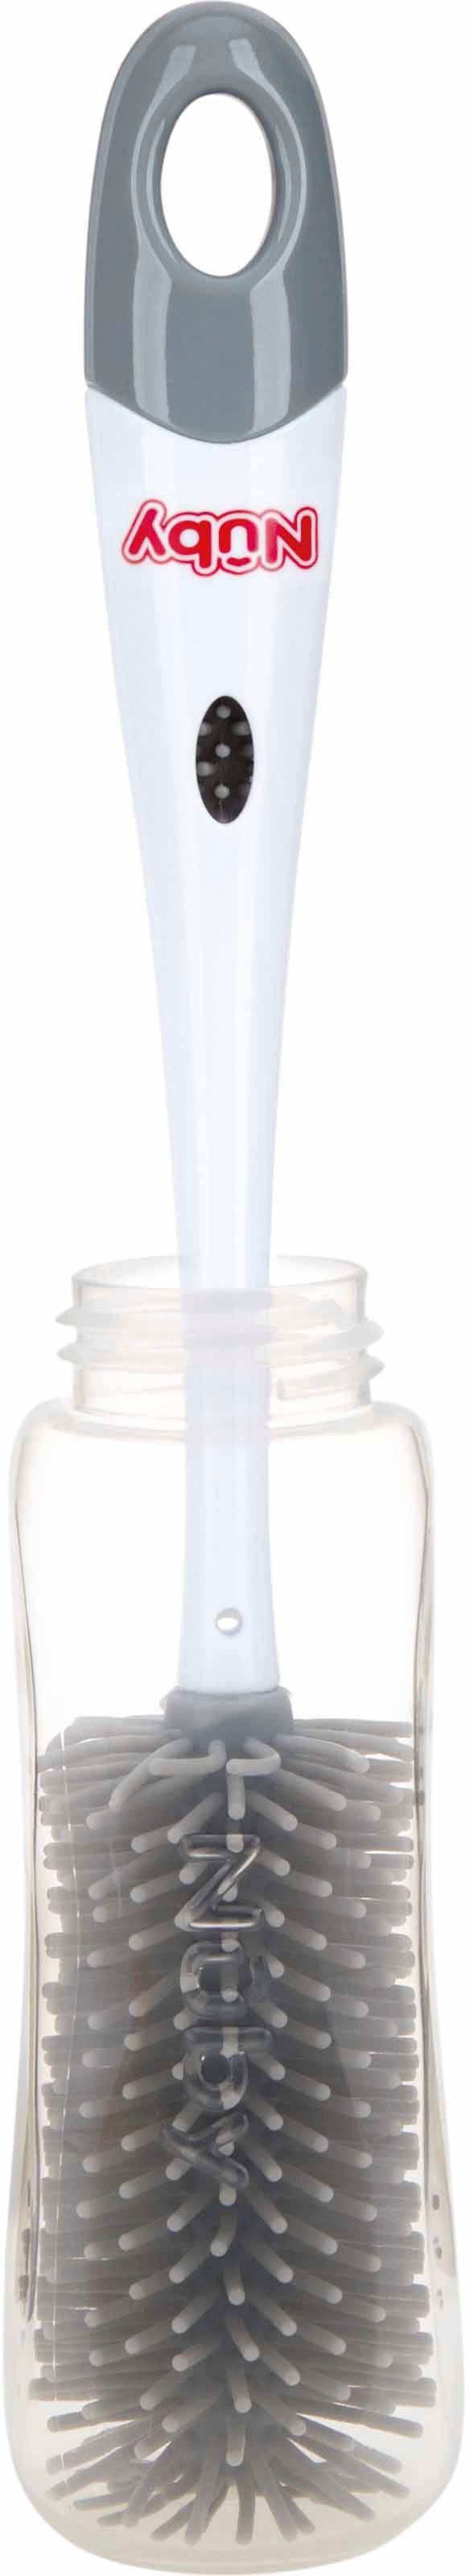 Nuby Reinigungsbürste Flaschenbürste für Silikon, Flaschen, Mundstücke, Kindergeschirr oder Becher